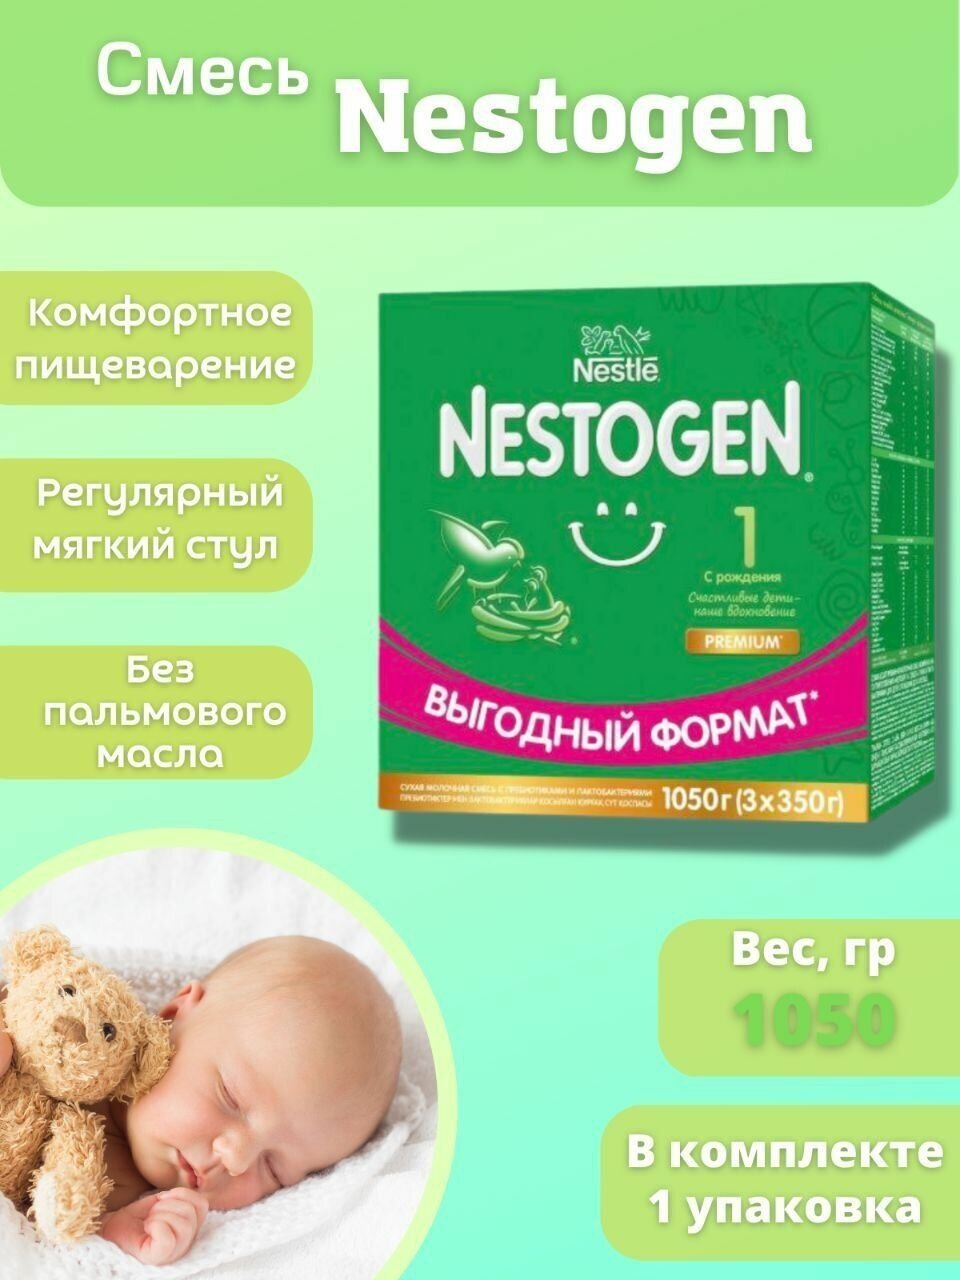 Nestogen® 1 Сухая молочная смесь для регулярного мягкого стула, 600гр - фото №13